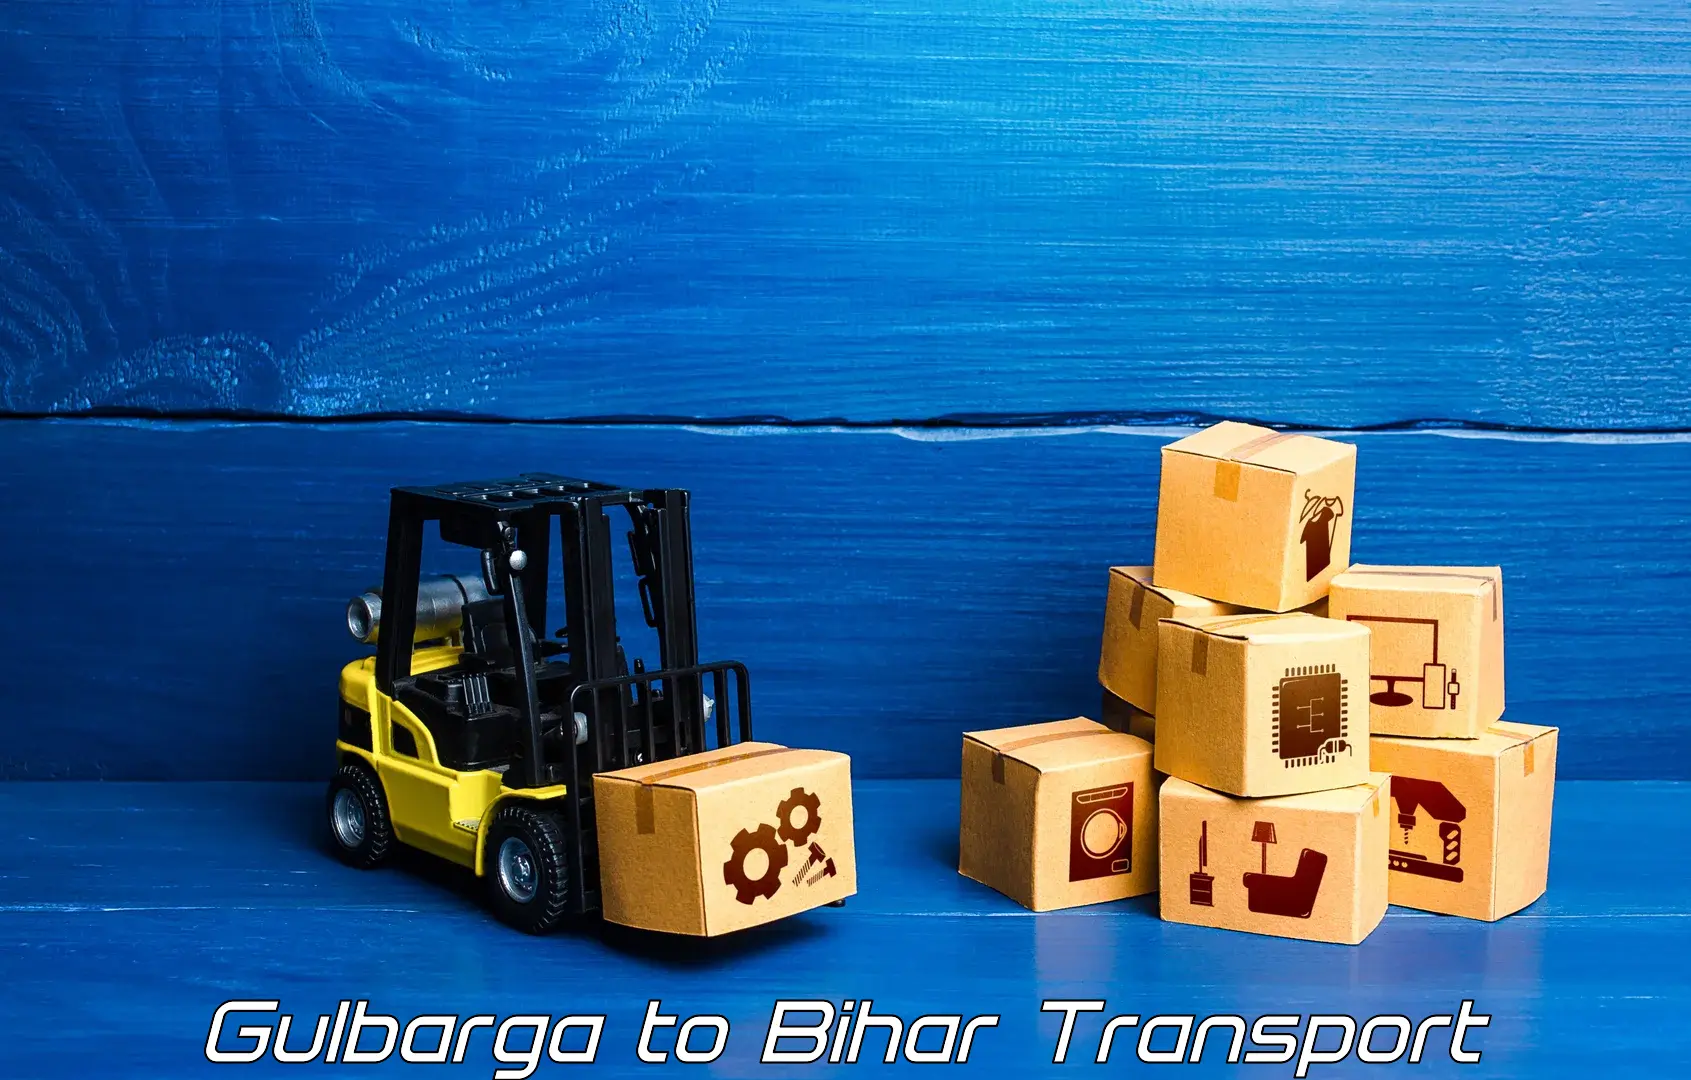 Furniture transport service Gulbarga to Sangrampur